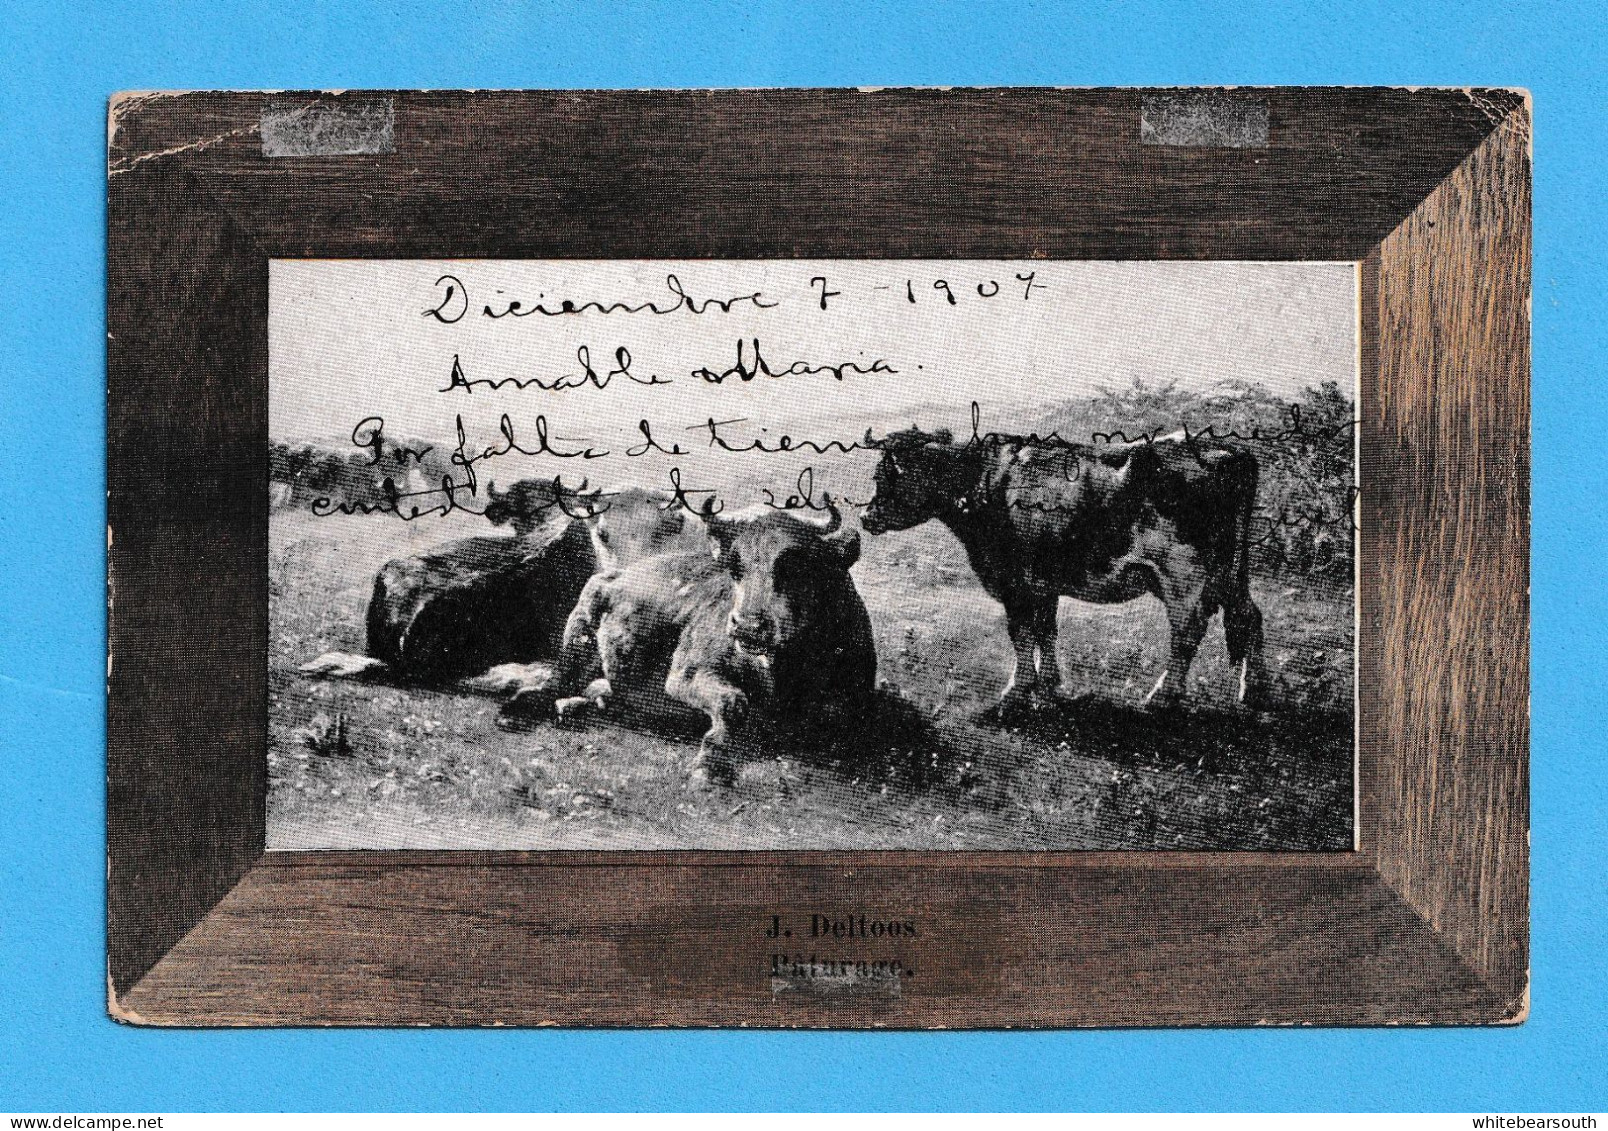 460 - FRANCE FARM CAMPO J. DELTOOS PATORAGE PASTOREO TORO COW VACA GANADO  RARE  POSTCARD - Stieren